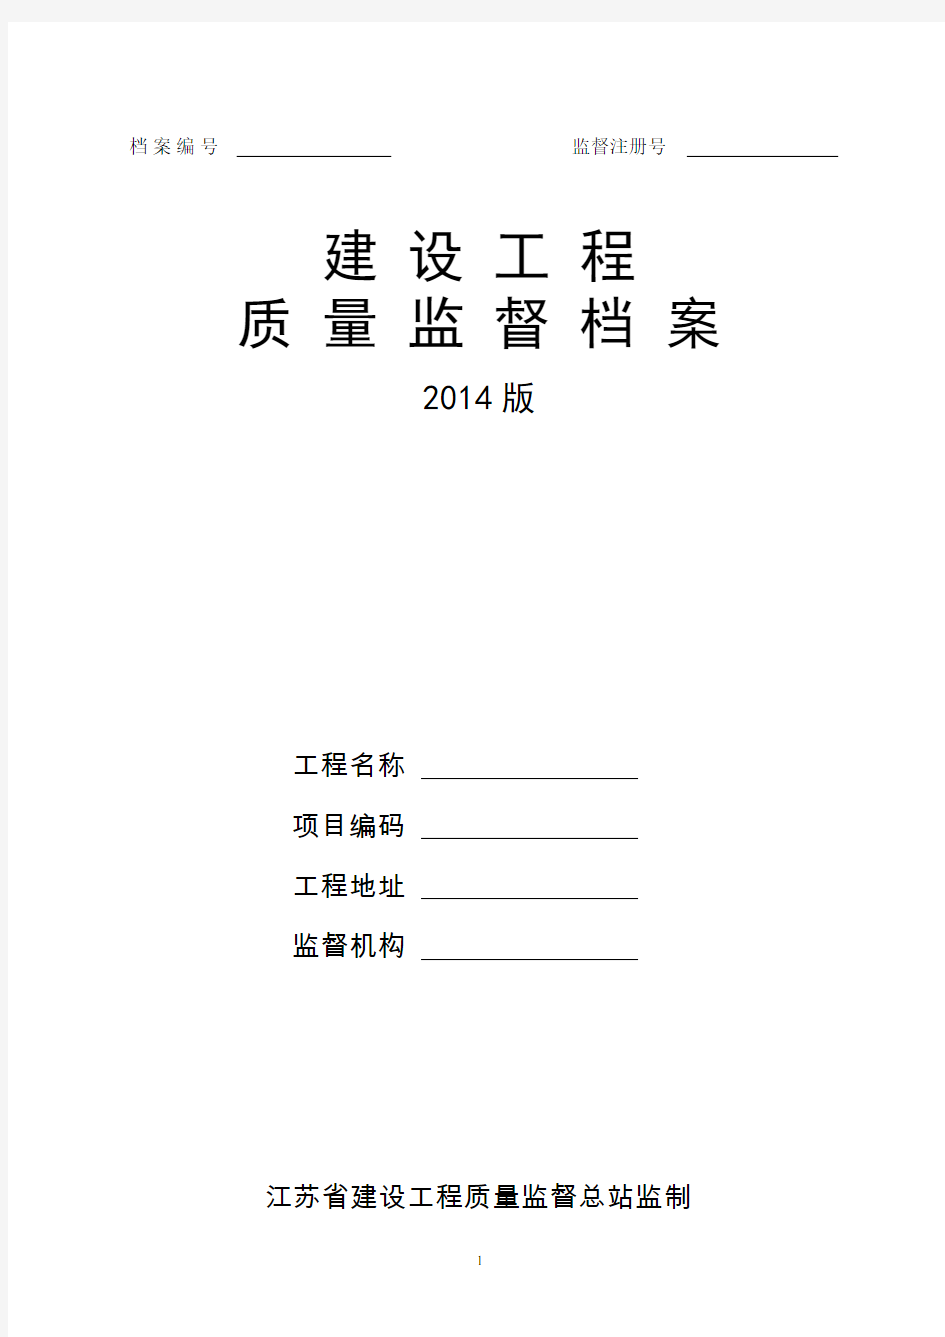 【江苏】《建设工程质量监督档案(2014版)》